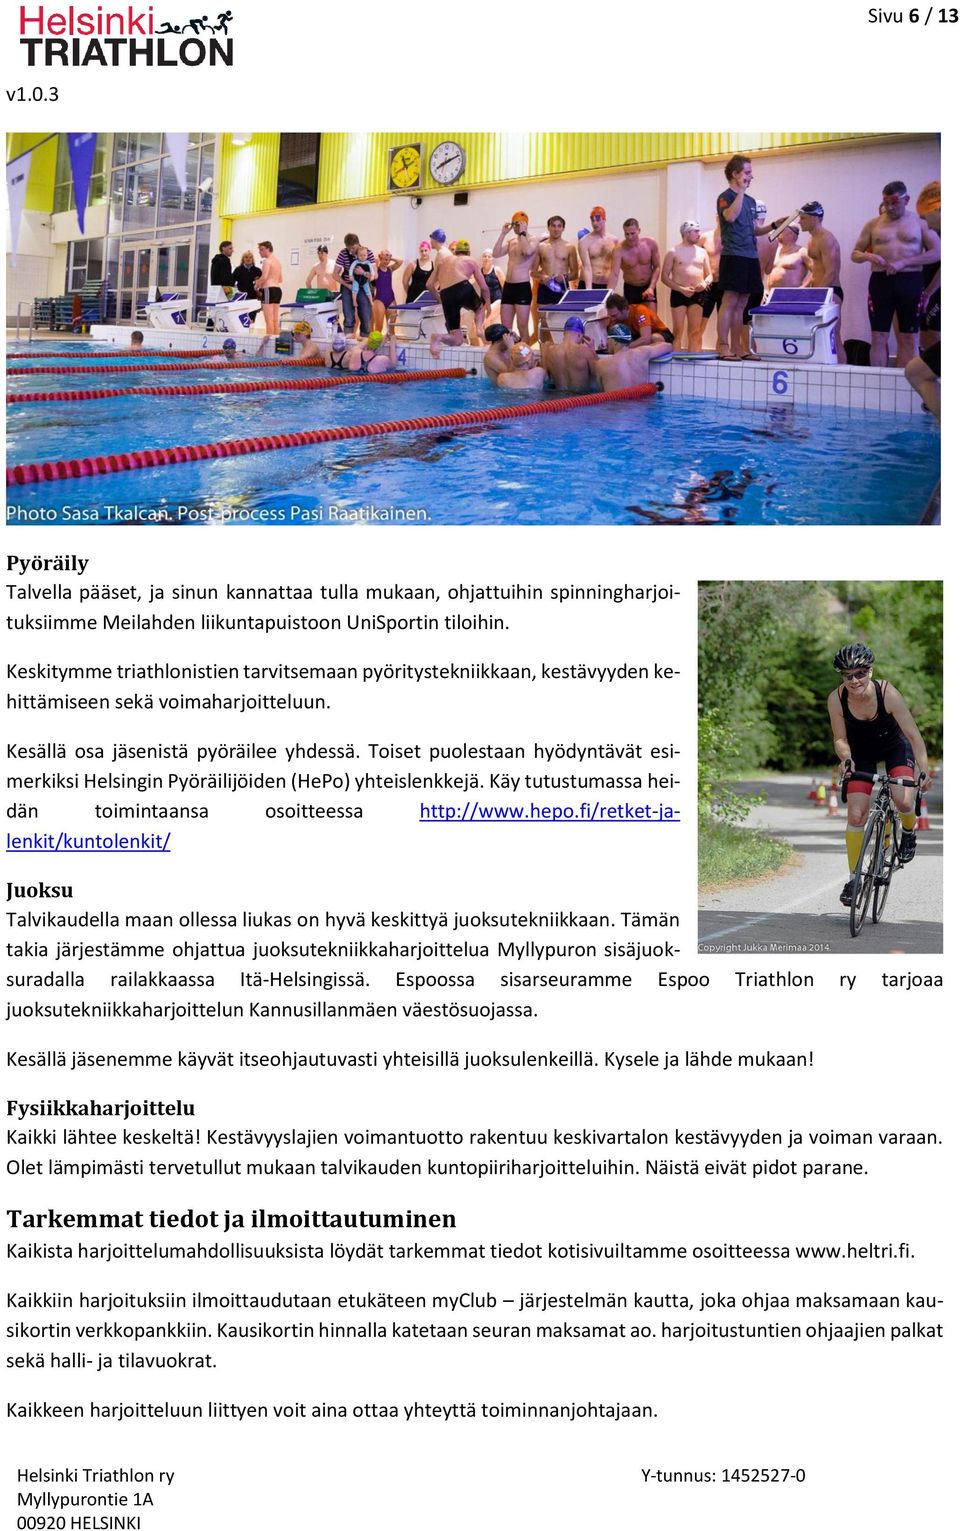 Toiset puolestaan hyödyntävät esimerkiksi Helsingin Pyöräilijöiden (HePo) yhteislenkkejä. Käy tutustumassa heidän toimintaansa osoitteessa http://www.hepo.